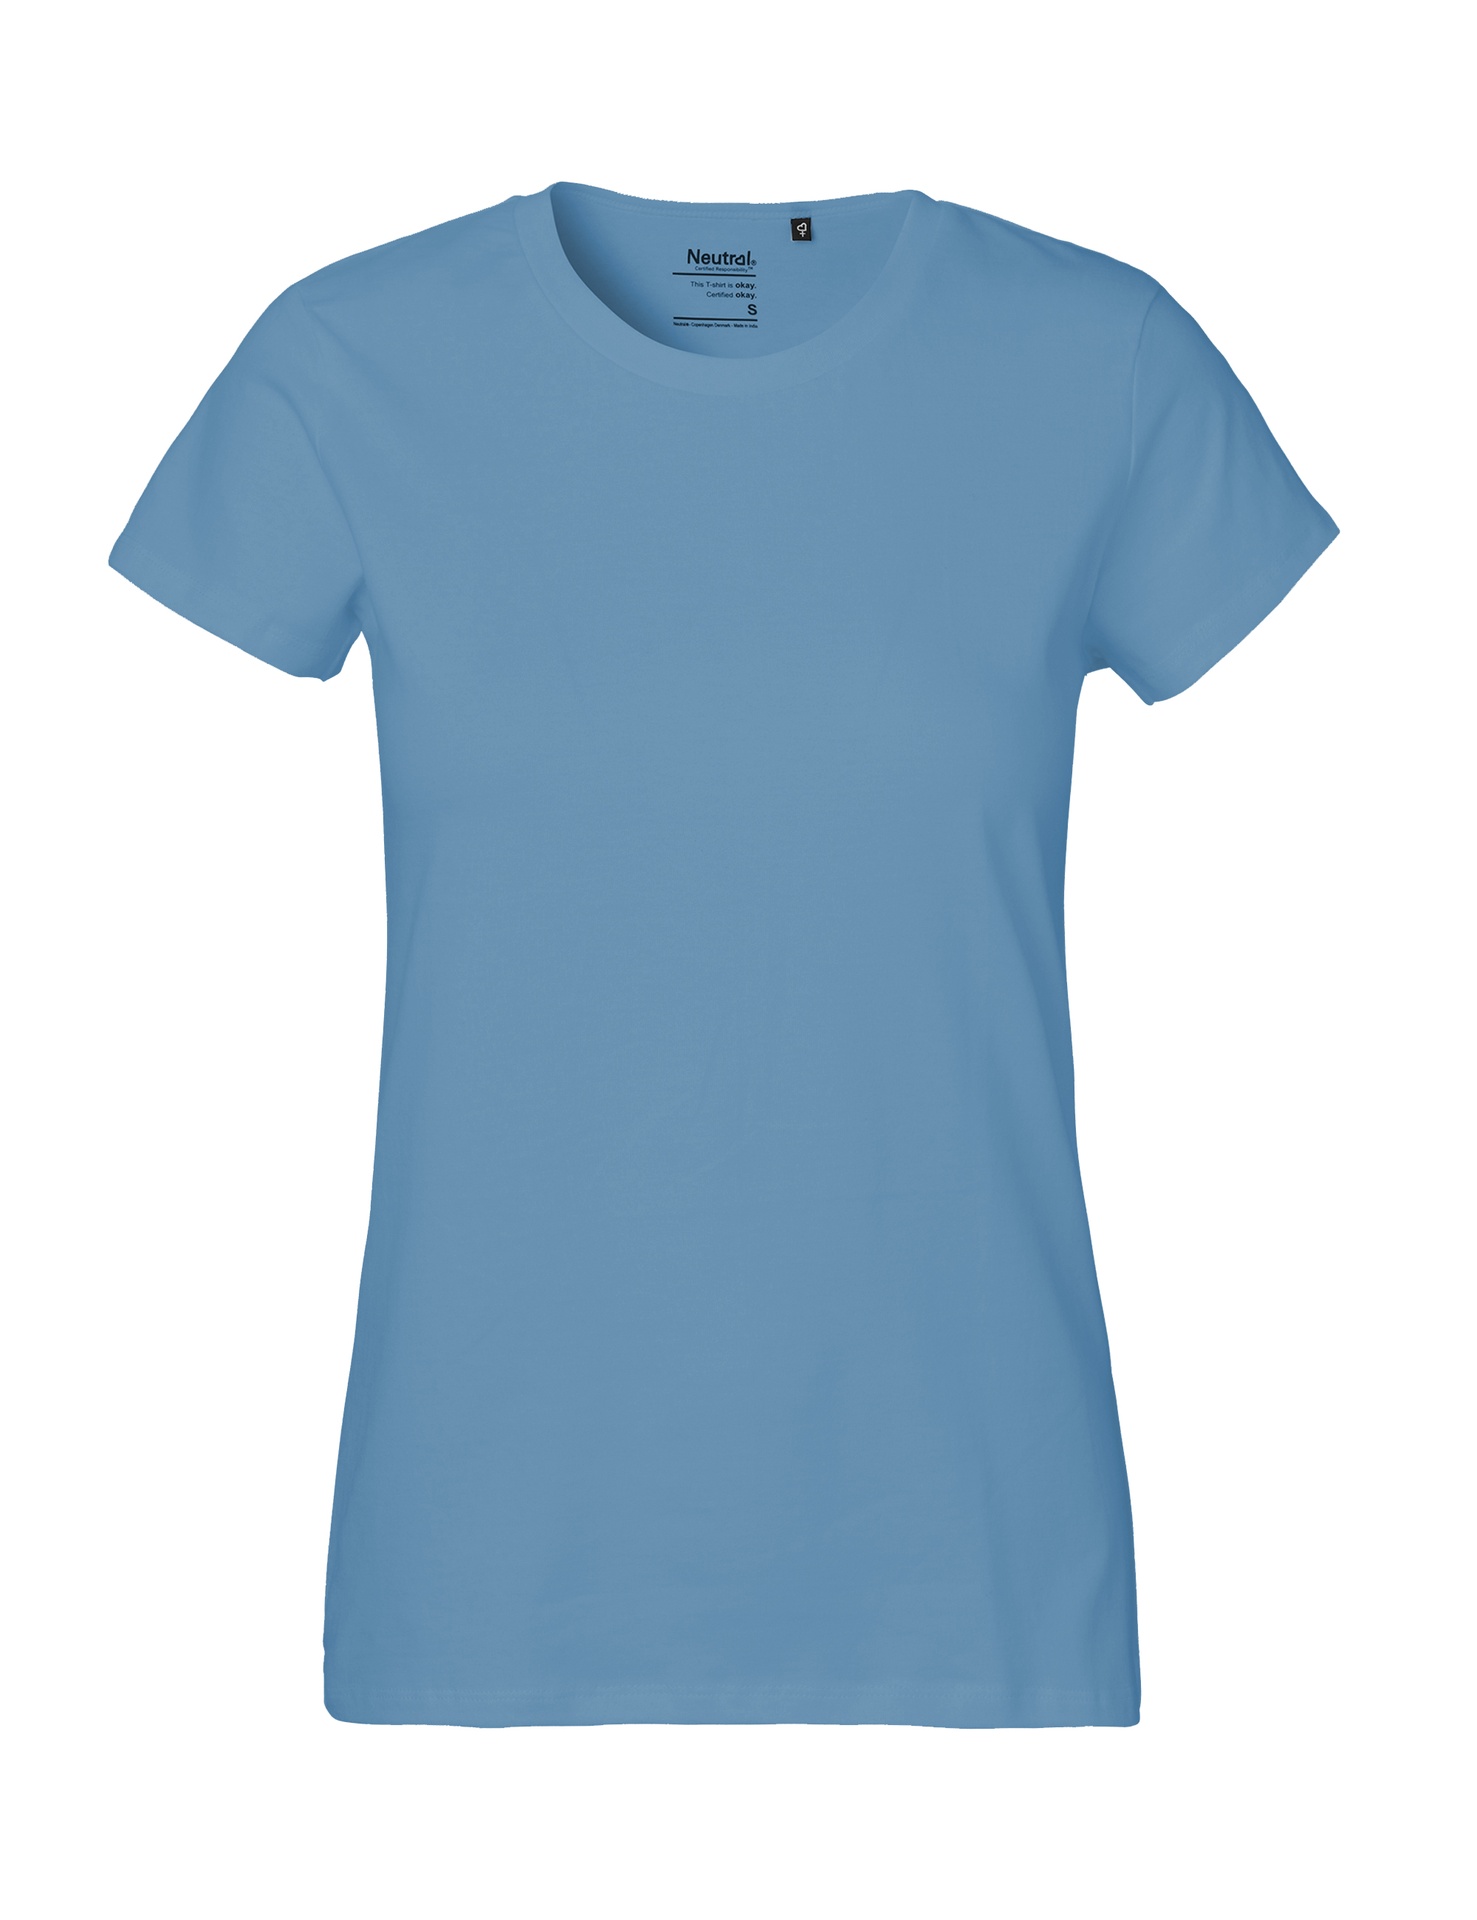 [PR/04114] Ladies Classic T-Shirt (Dusty Indigo 41, L)